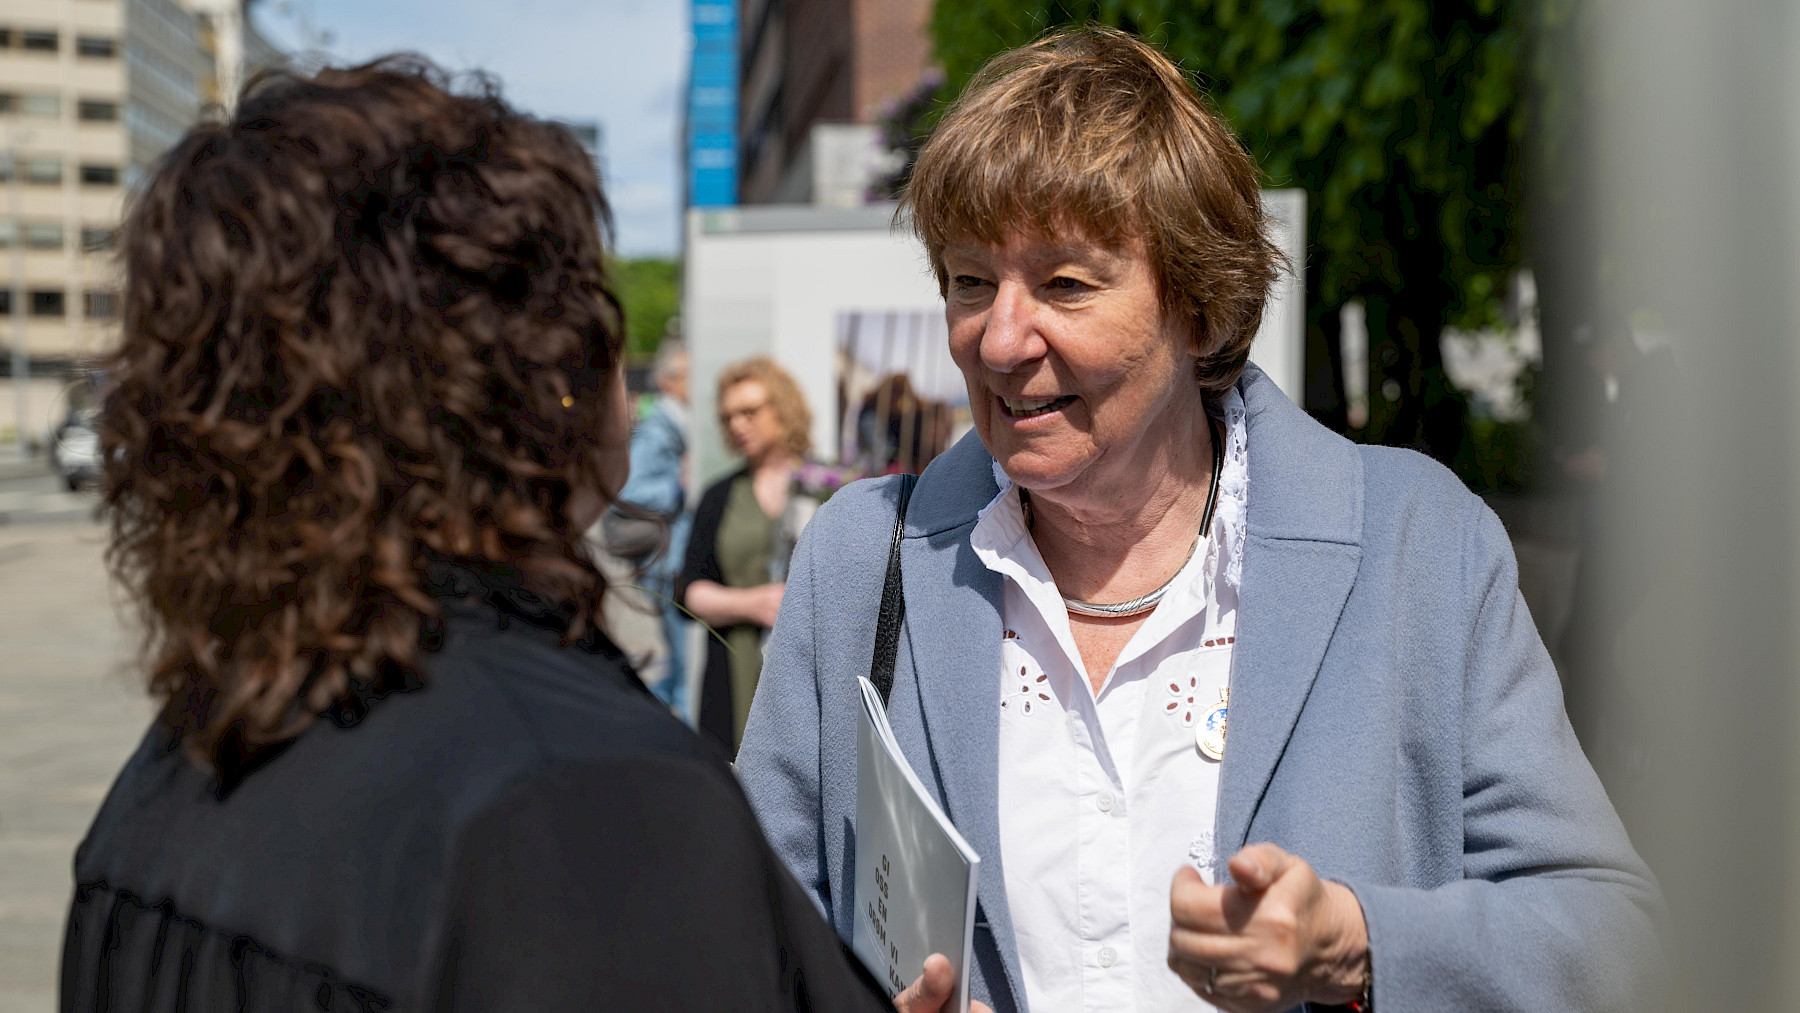 IMPONERT: Ordfører Marianne Borgen er imponert over fotoprosjektet til Mette Randem, som har fotografert innsatte på retreat i Halden fengsel, for Frelsesarmeen.